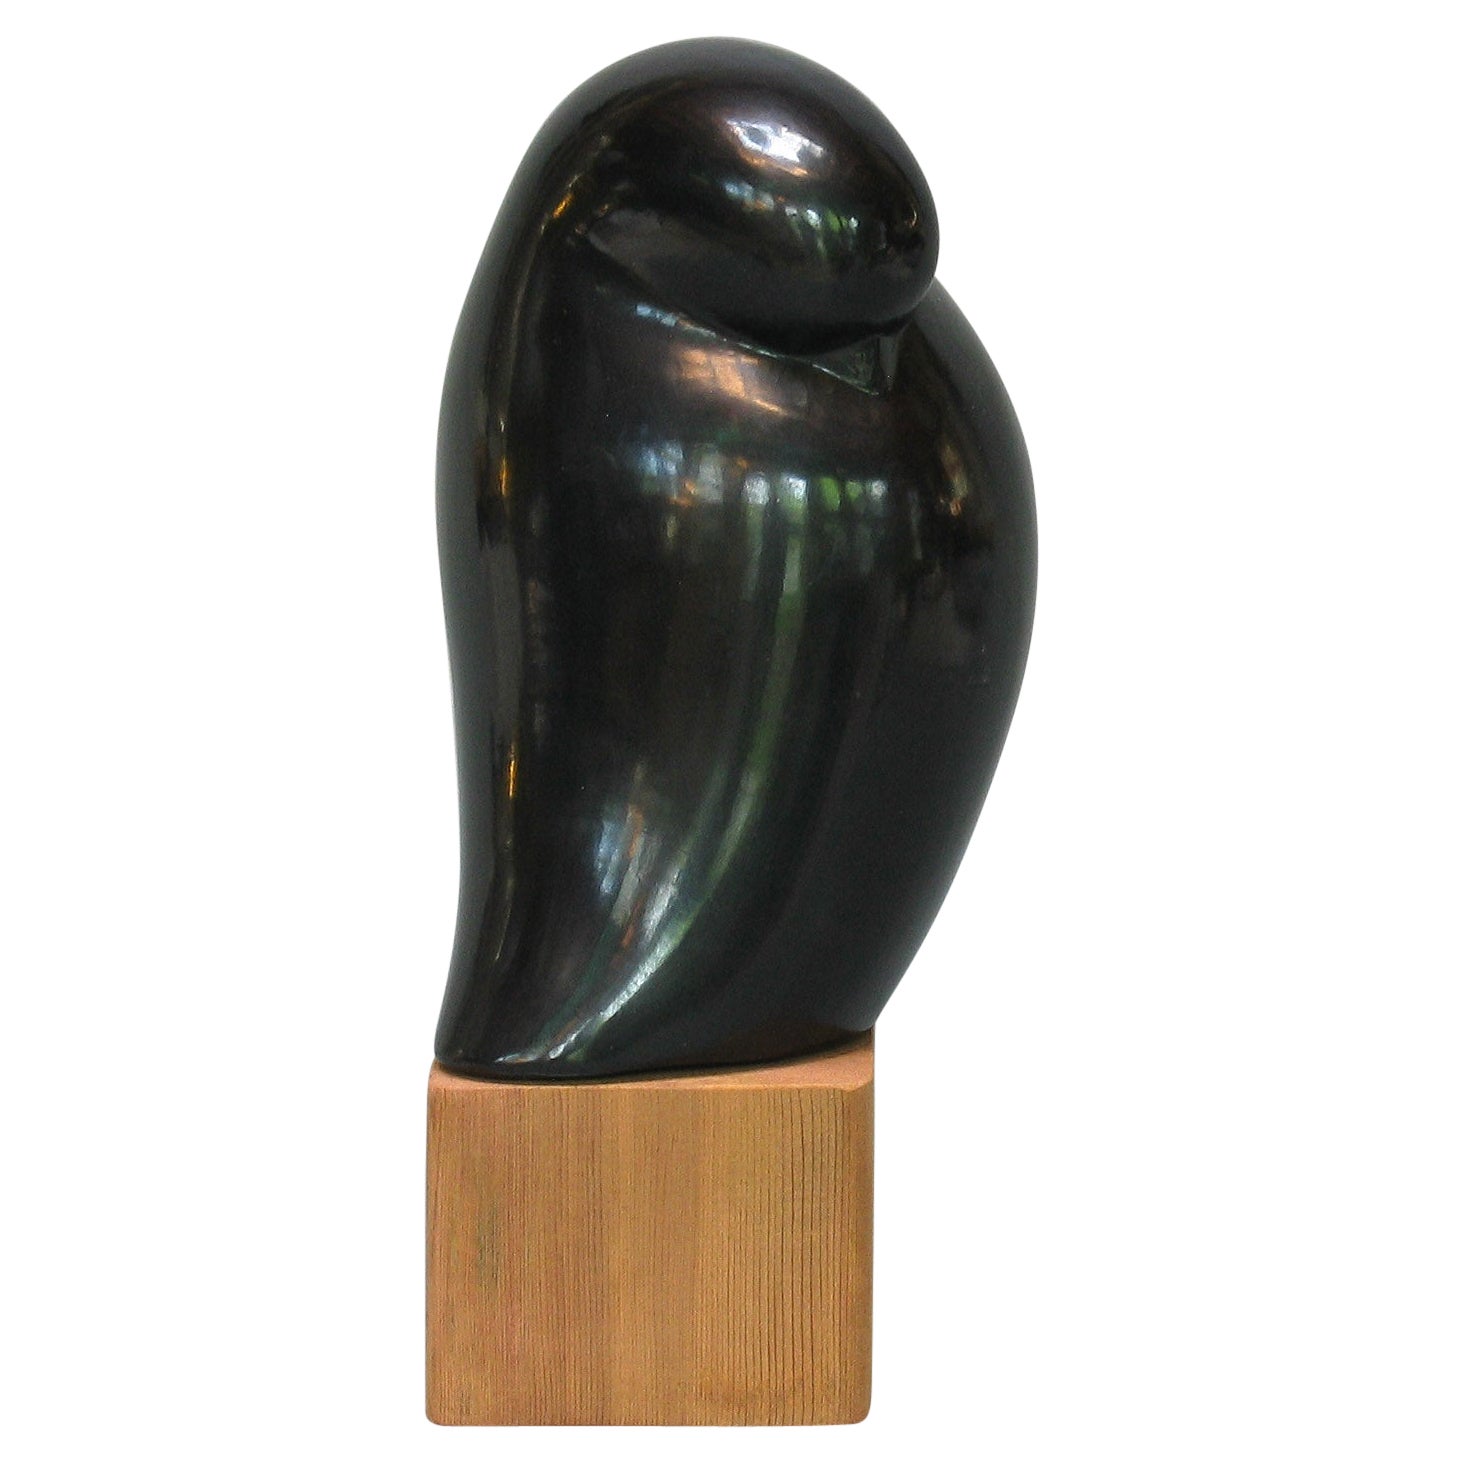 Black Pottery Bird Form Sculpture by Carlos Salas Oaxaca Mexico